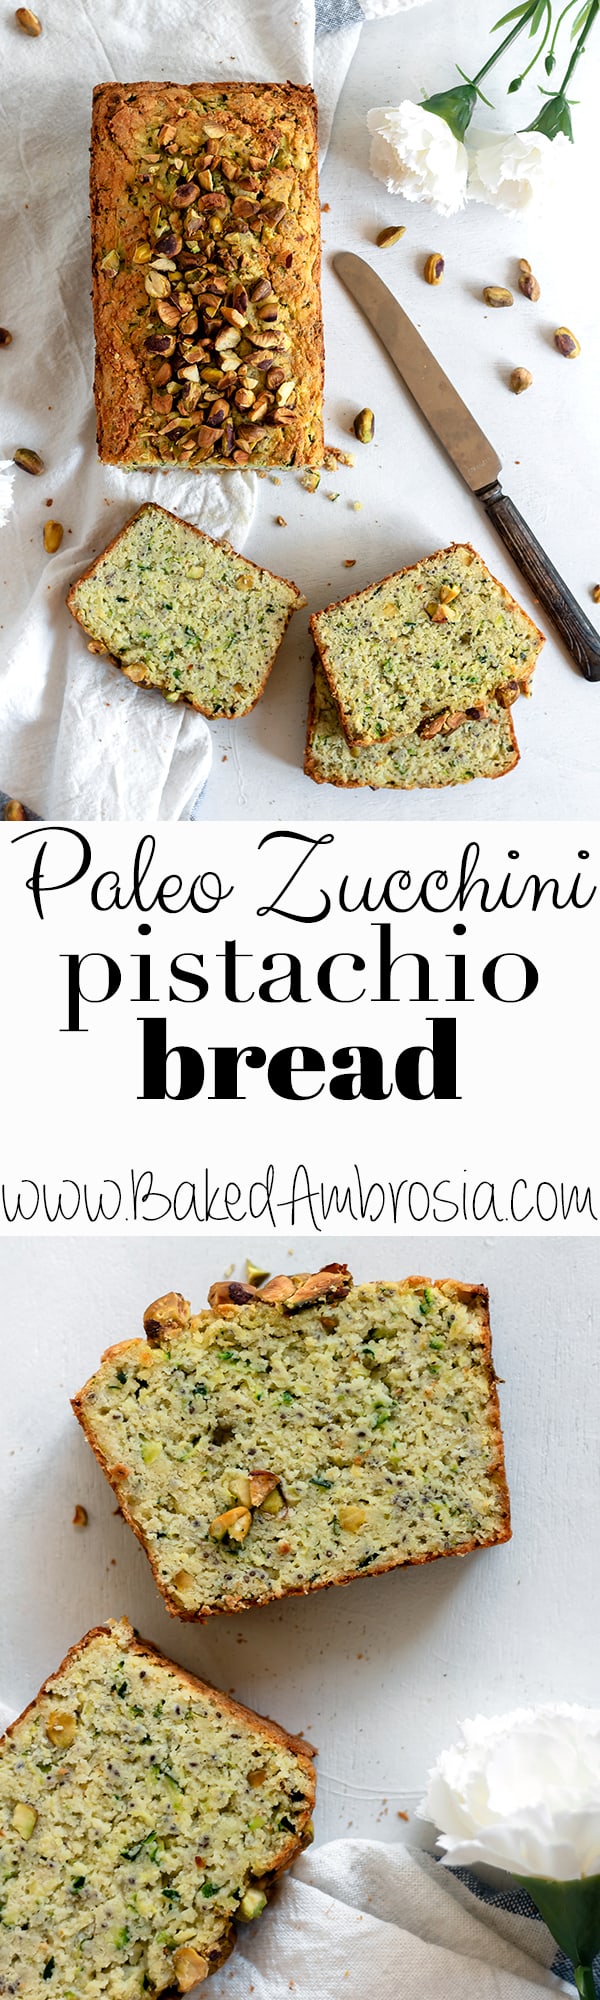 Paleo Zucchini Pistachio Bread (Gluten Free, Grain Free, Dairy Free)